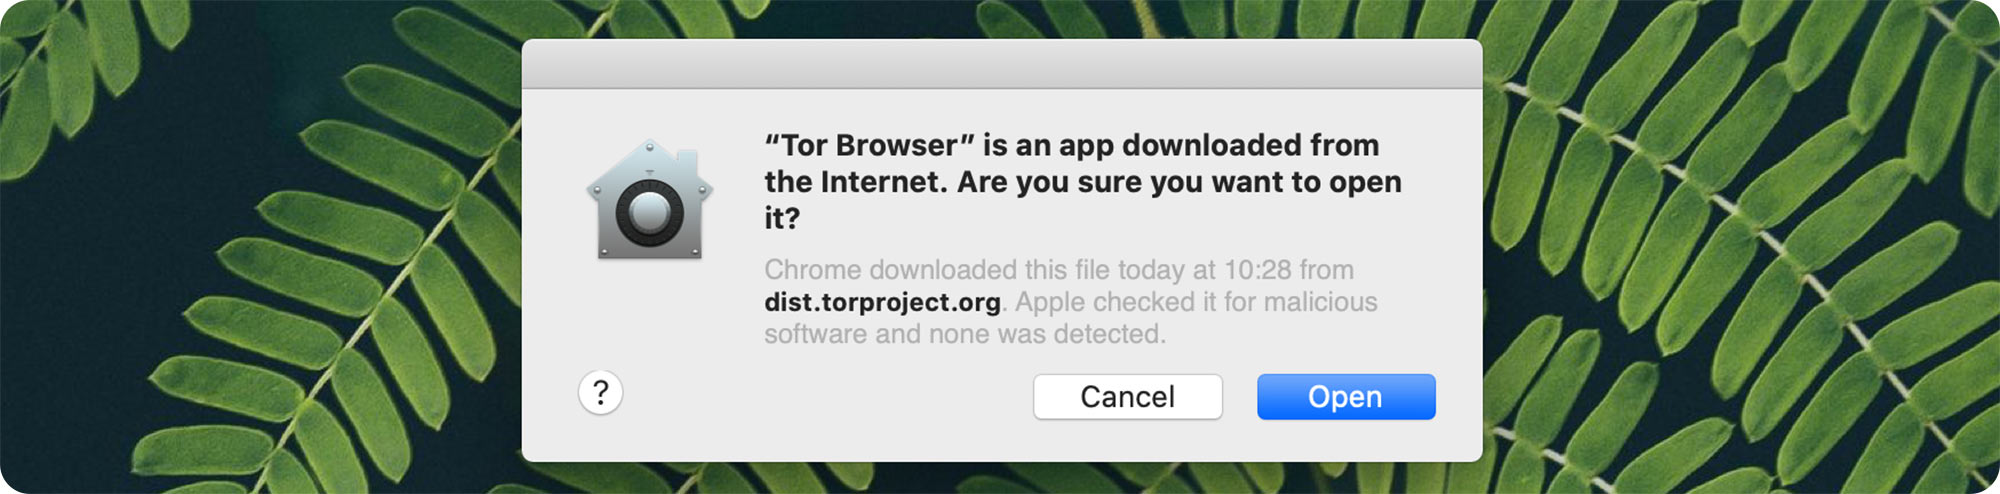 Настройка тор браузера на mac hydra2web tor browser bundle скачать hydra